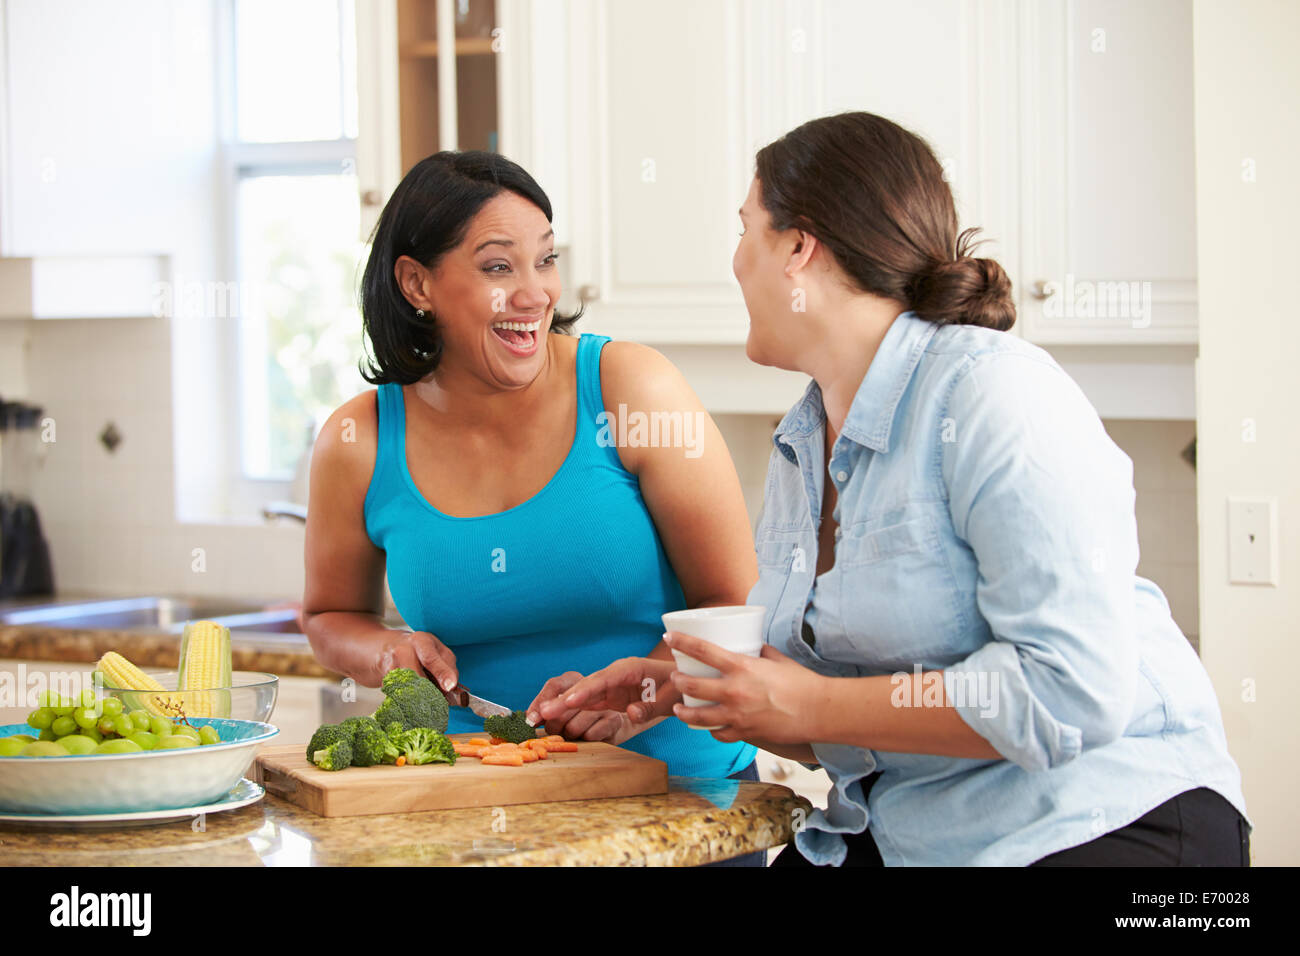 Zwei übergewichtige Frauen auf Diät, die Vorbereitung von Gemüse in der Küche Stockfoto